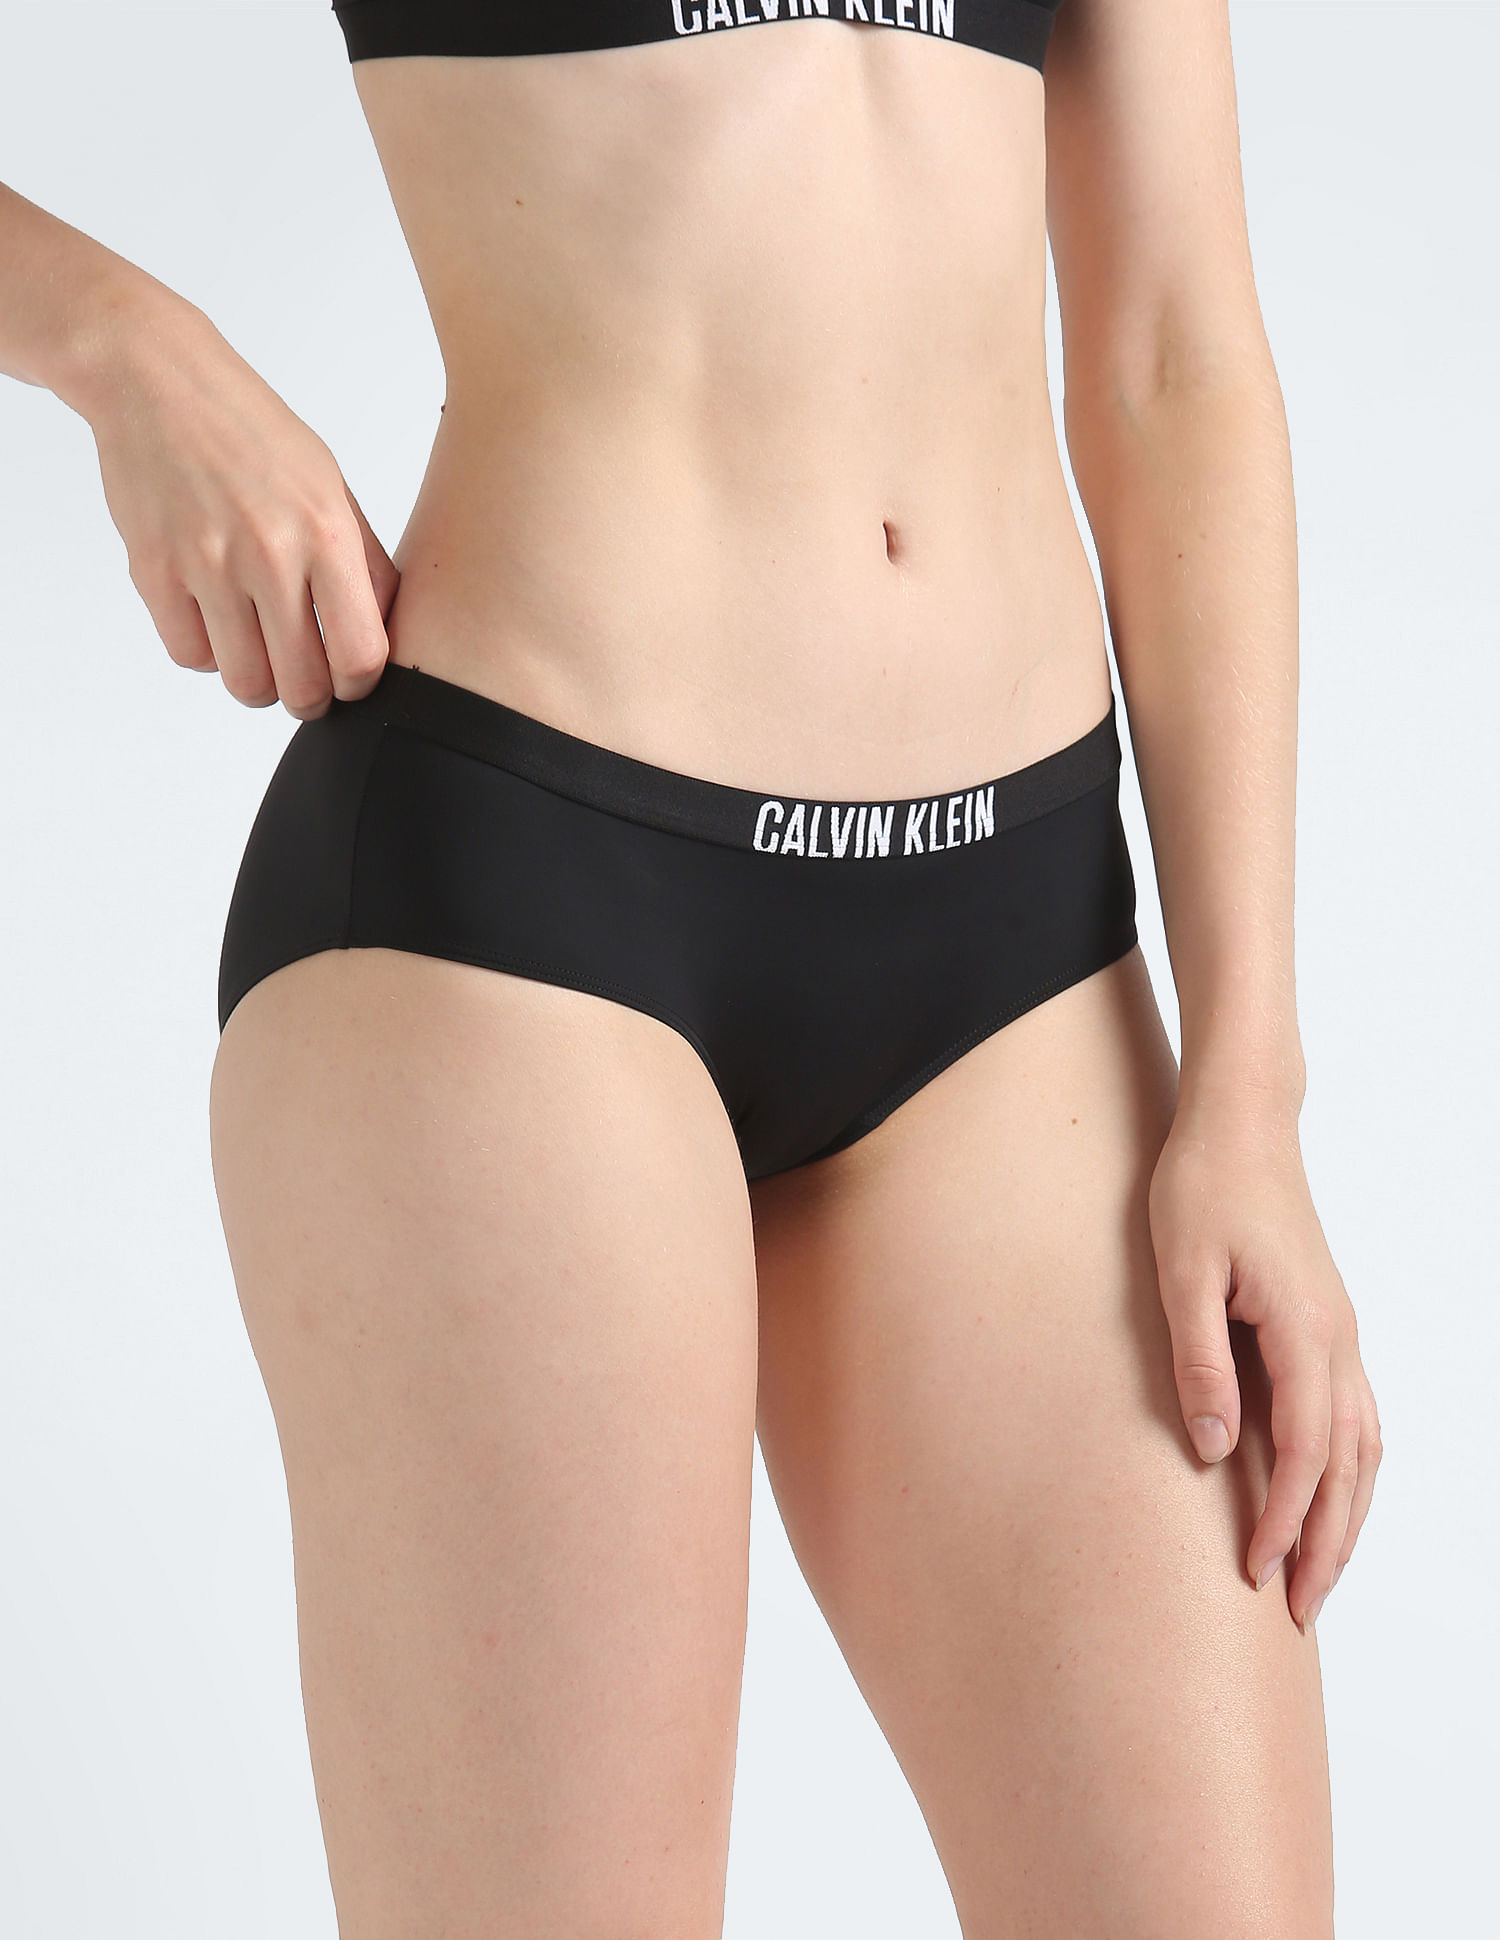 Black Women Hipster Calvin Klein Underwear - Buy Black Women Hipster Calvin  Klein Underwear online in India